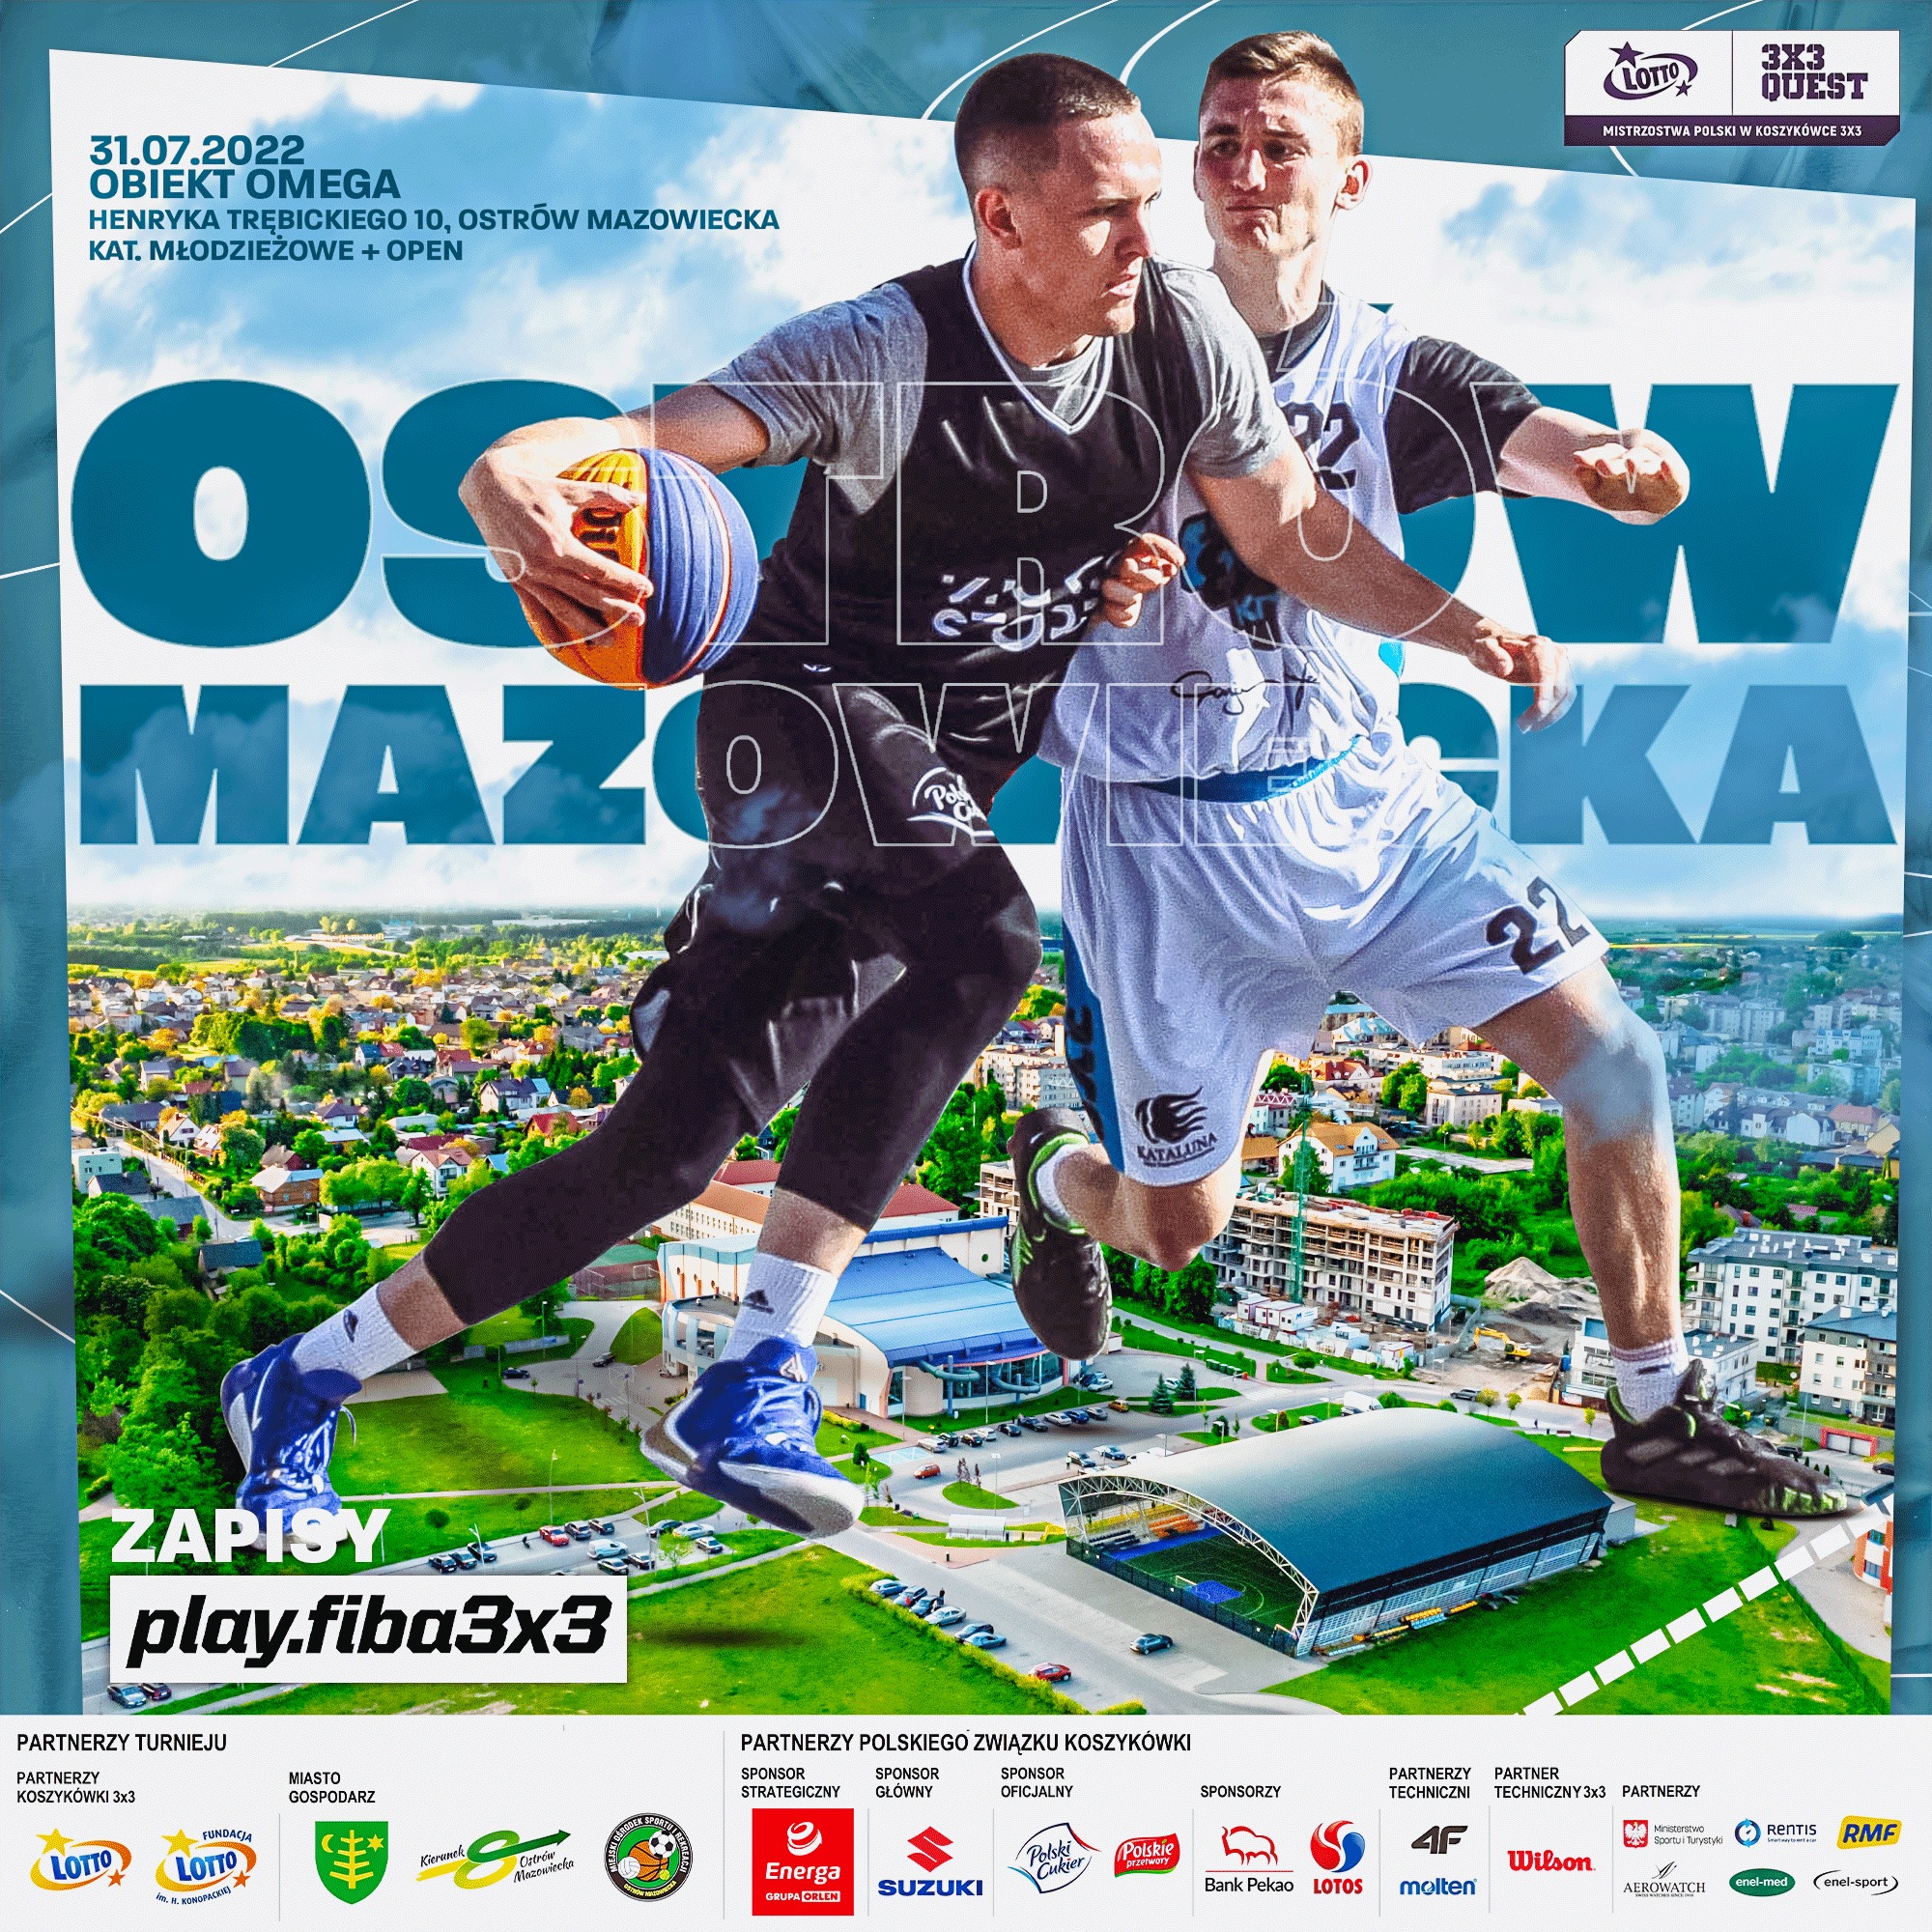 dwóch koszykarzy na tle miasta zapowiadają turniej lotto 3x3 quest 31 lipiec 2022 obiekt omega ostrów mazowiecka 